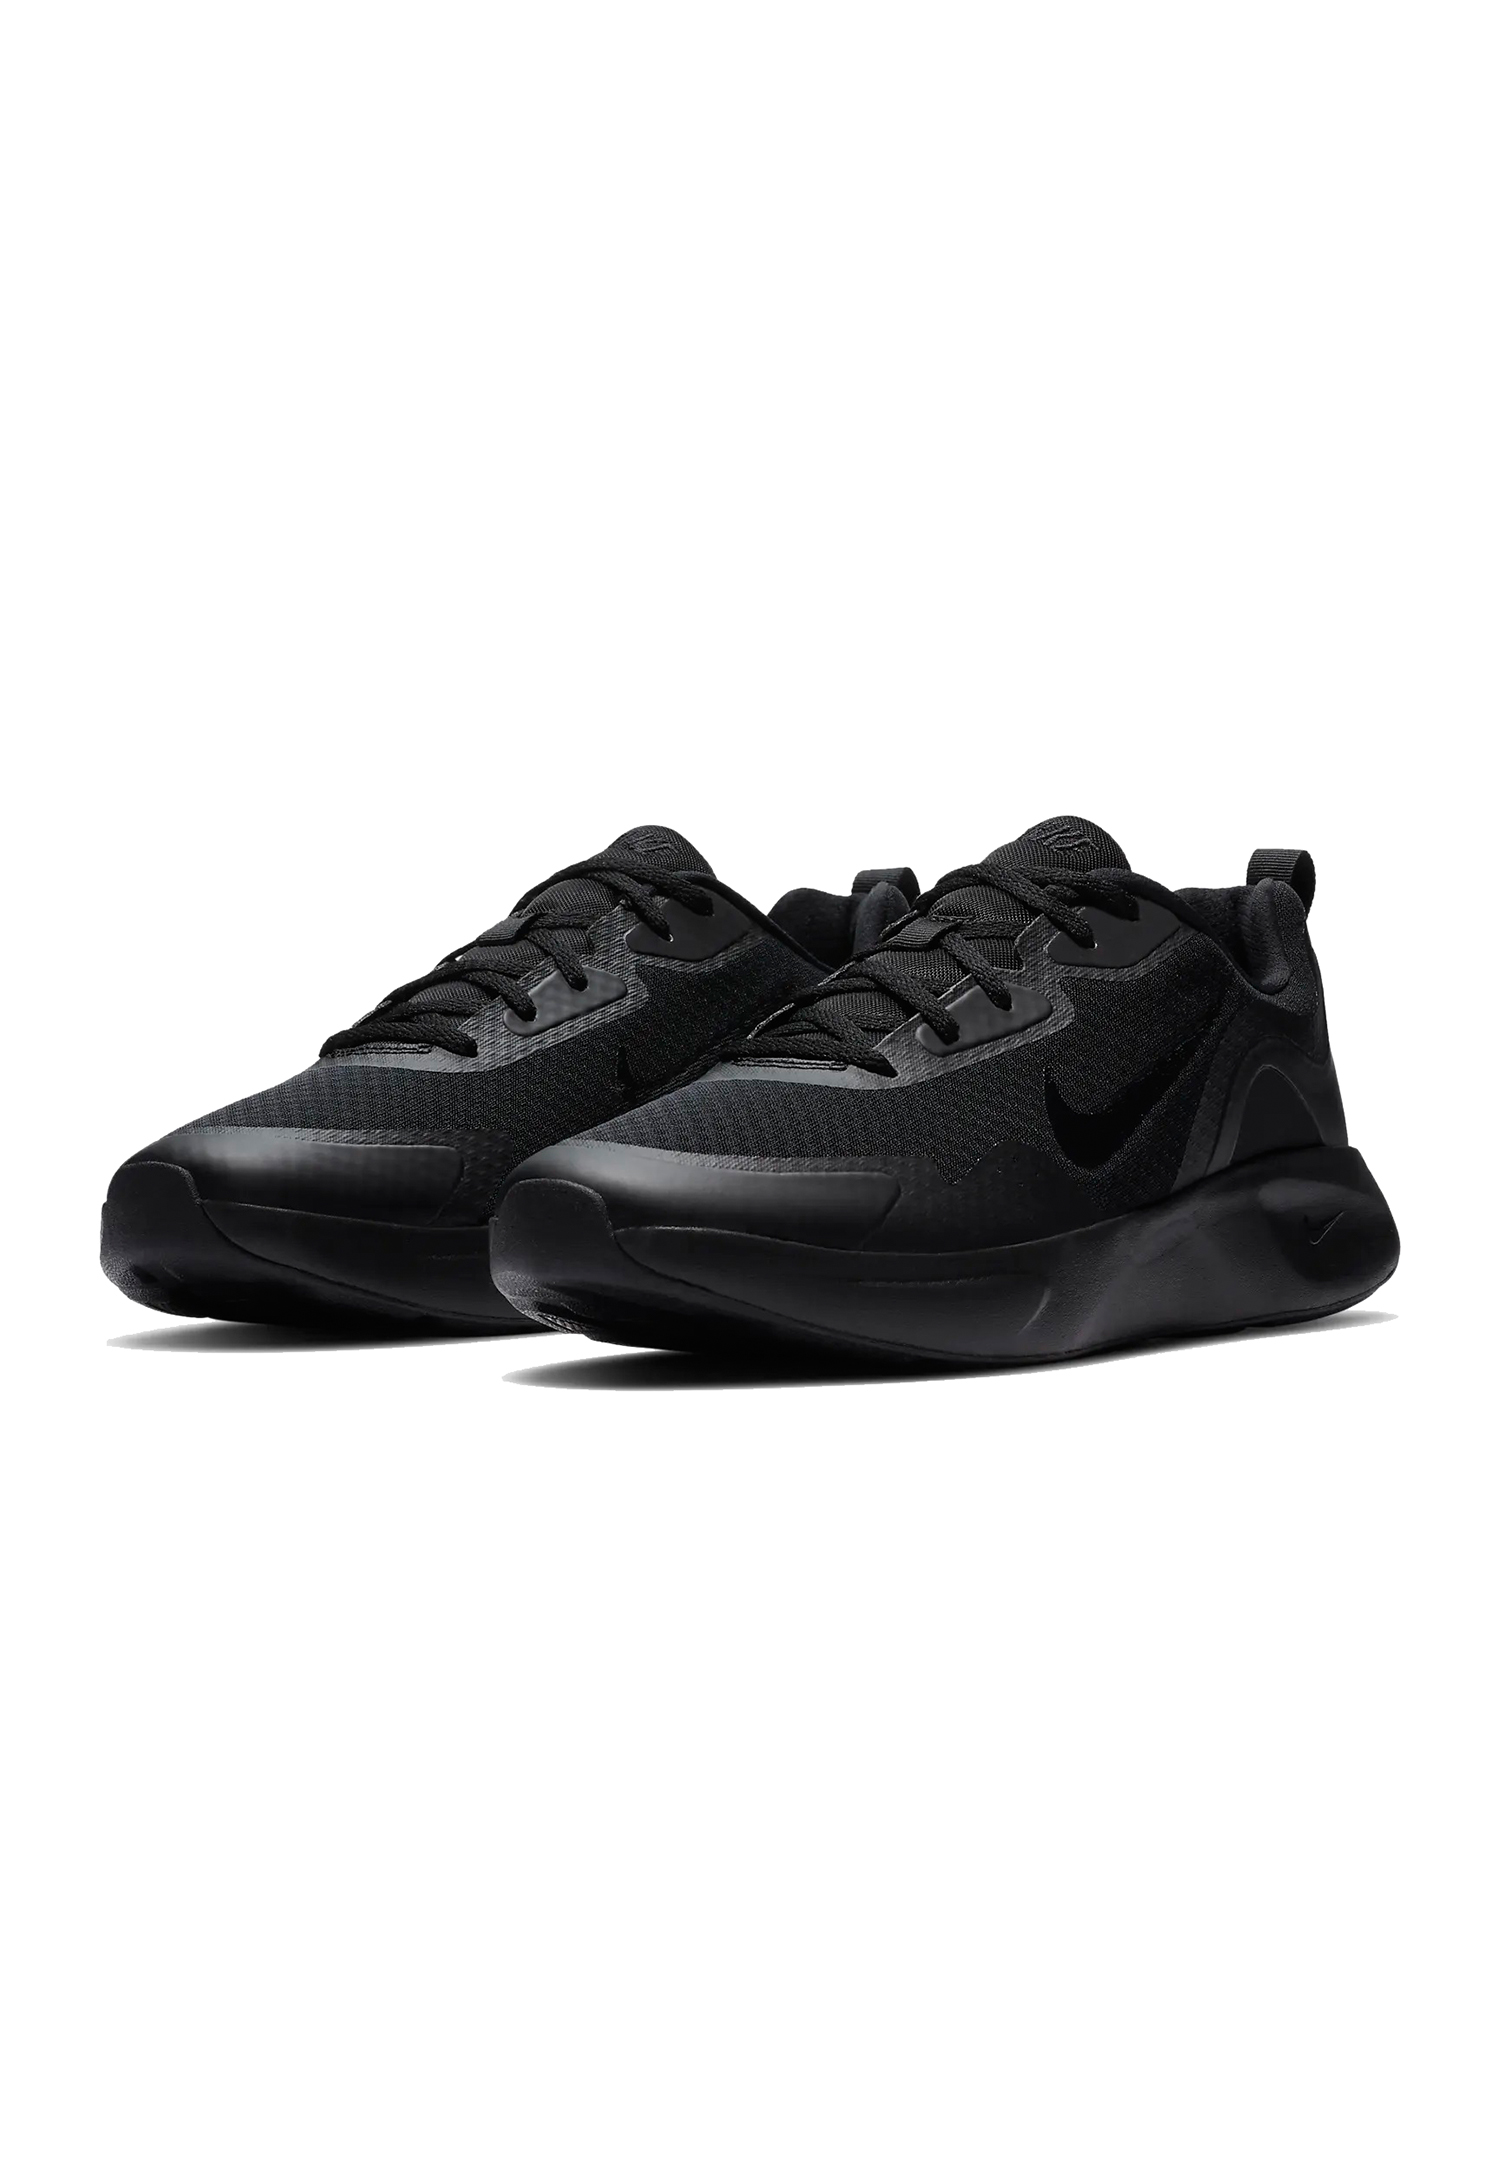 Nike WEARALLDAY Laufschuhe Herren MEN Sneaker Sportschuhe CJ1982 003 schwarz 